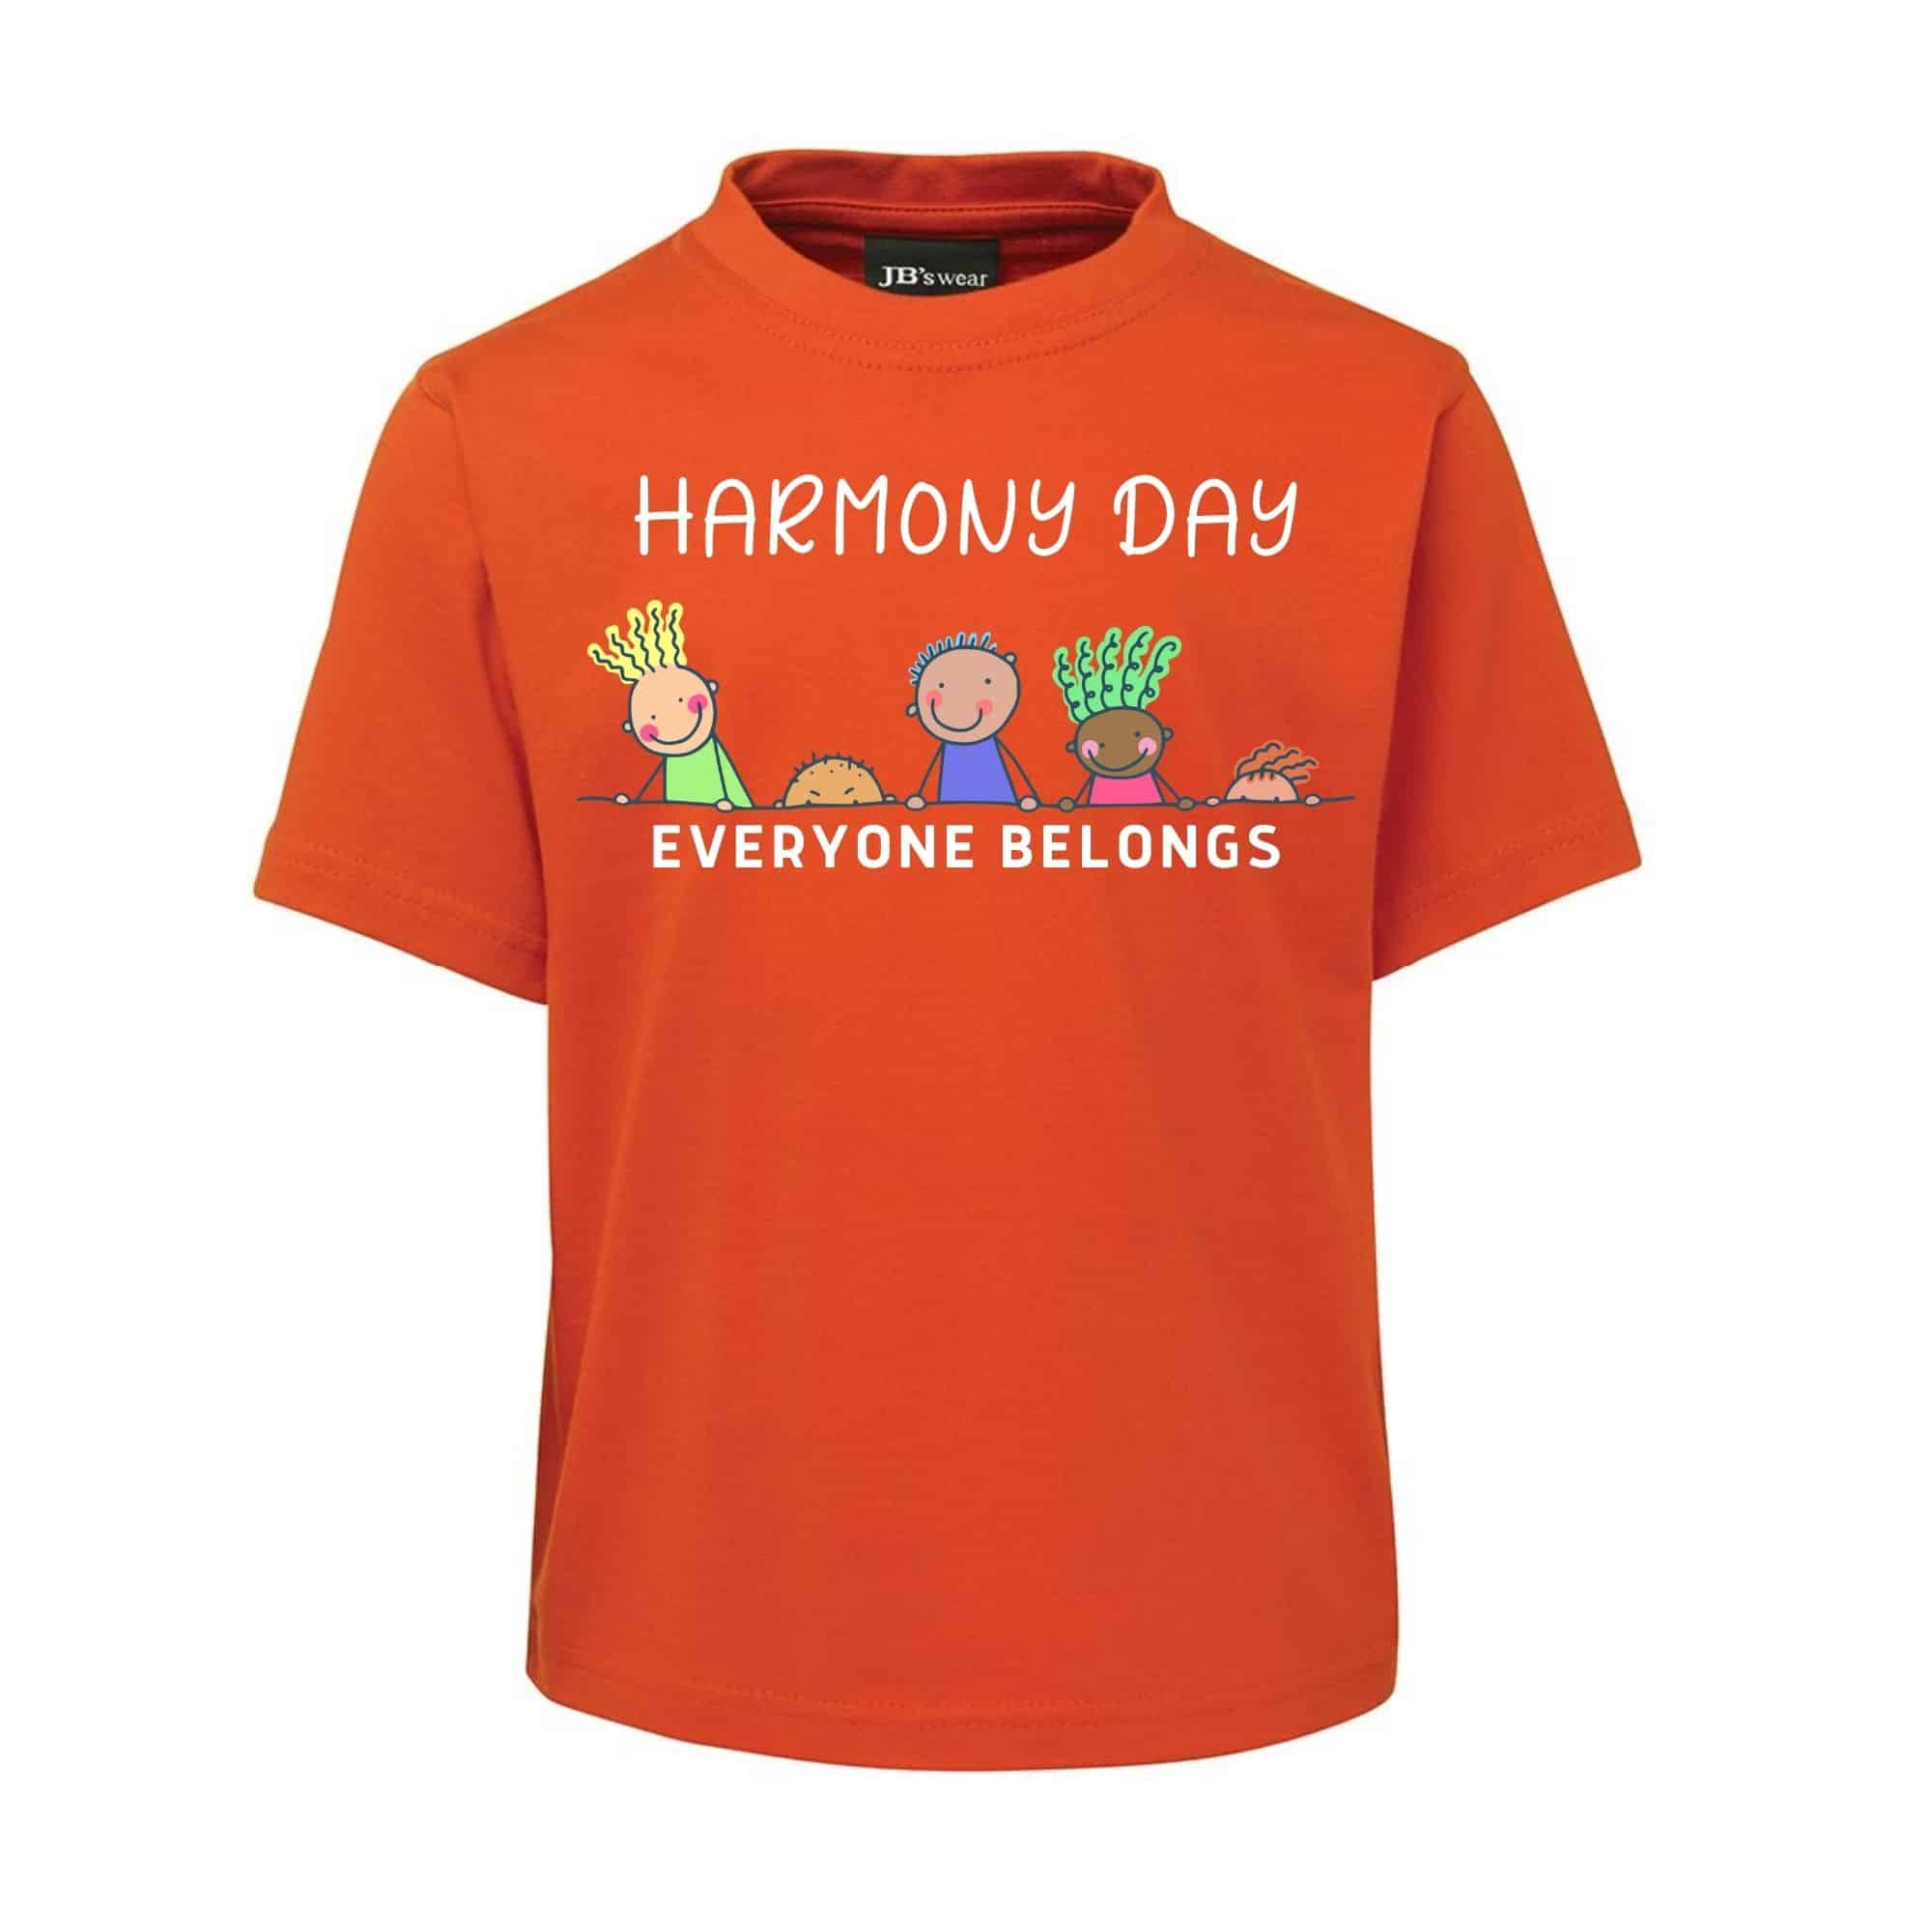 Harmony-Day-E